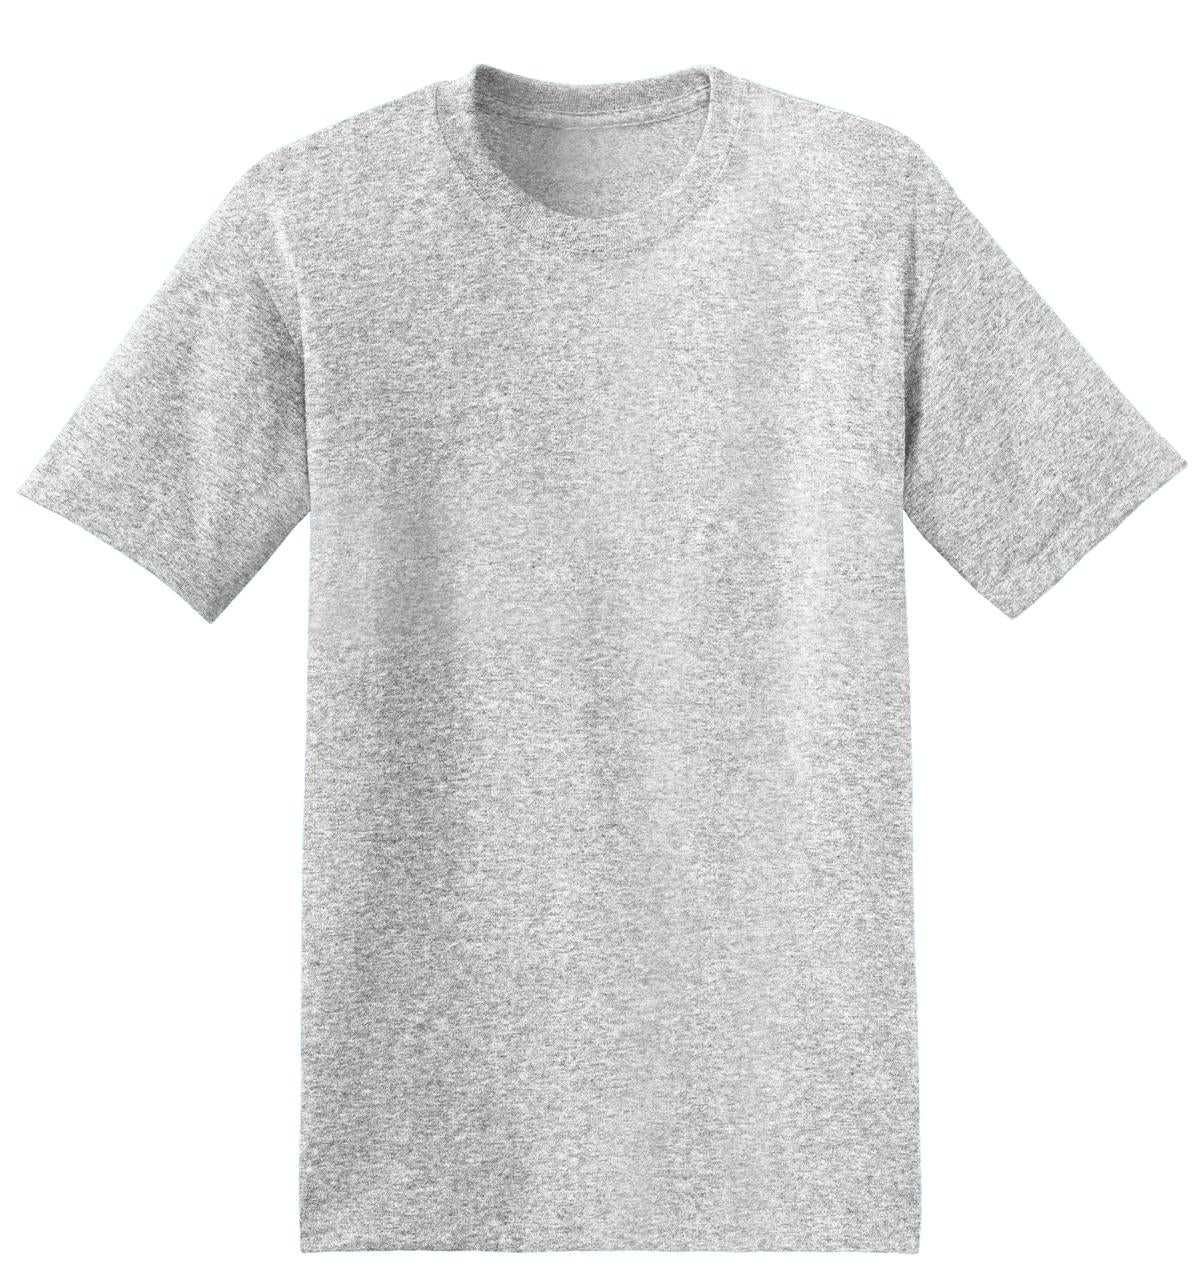 Hanes 5170 Ecosmart 50/50 Cotton/Poly T-Shirt - Ash - HIT a Double